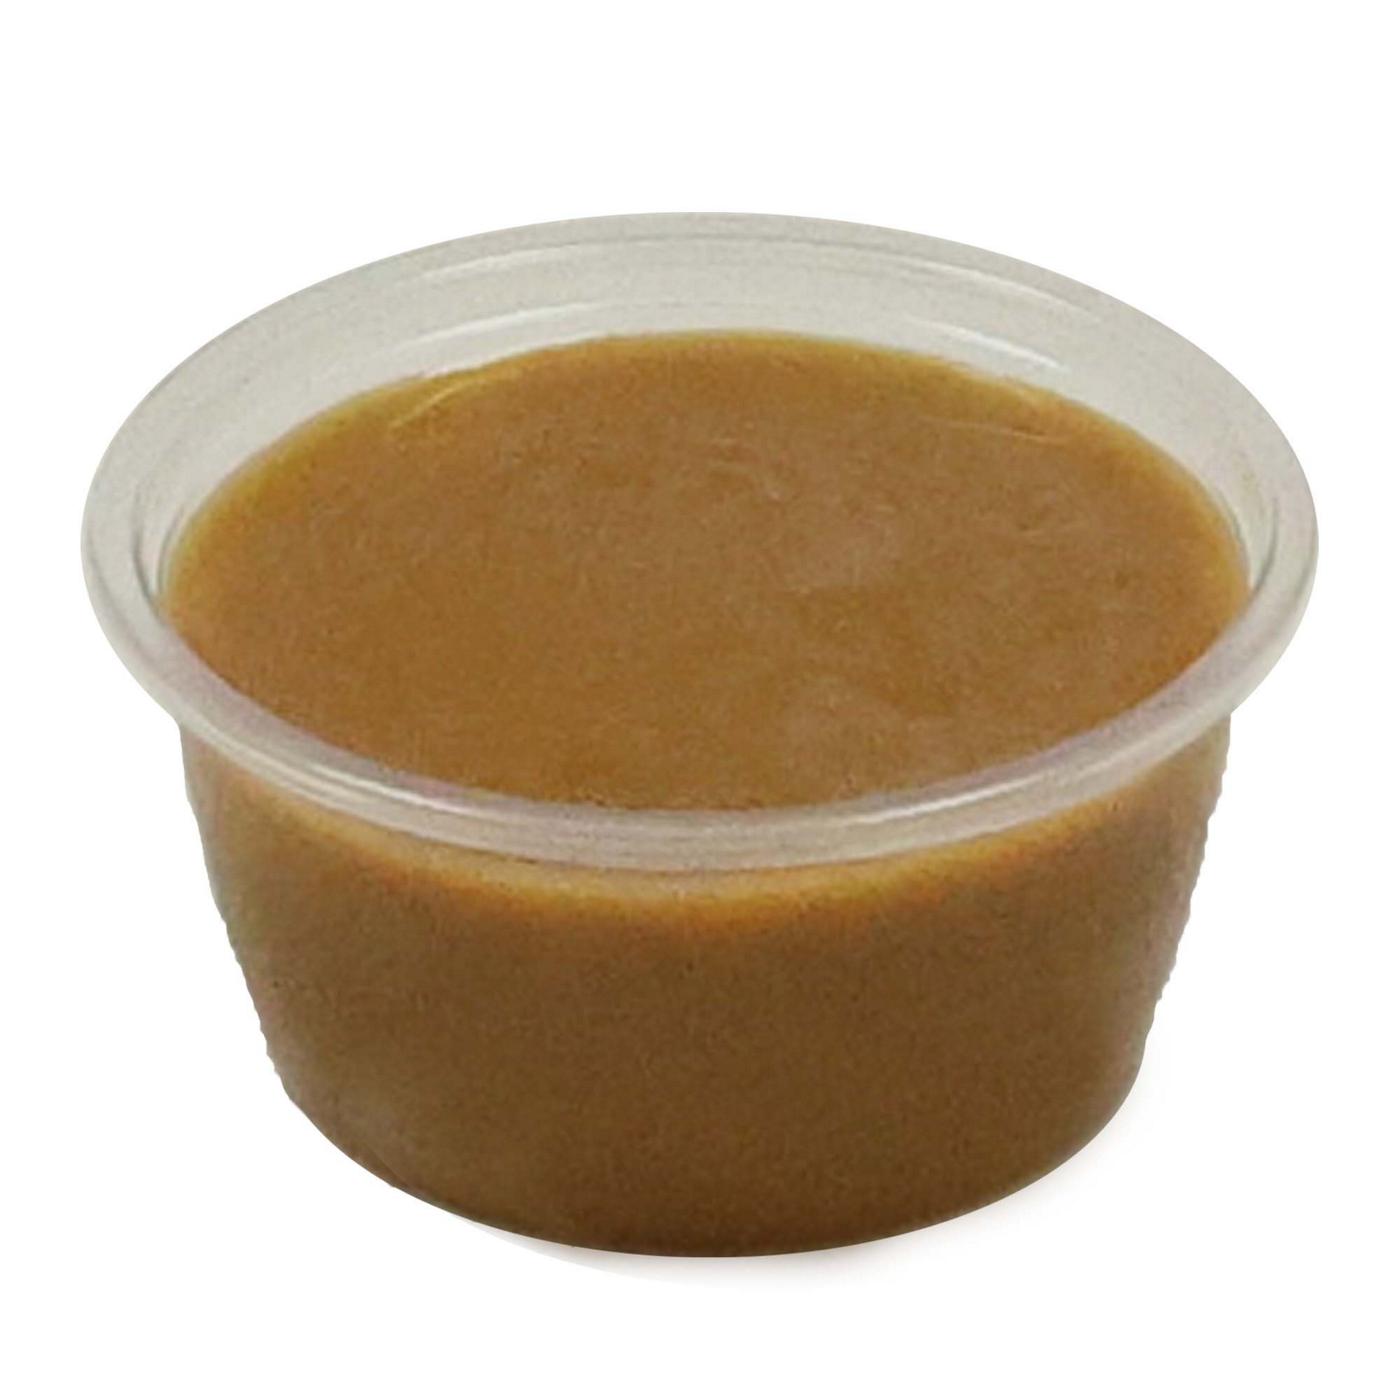 H-E-B Sushiya Peanut Sauce; image 2 of 3